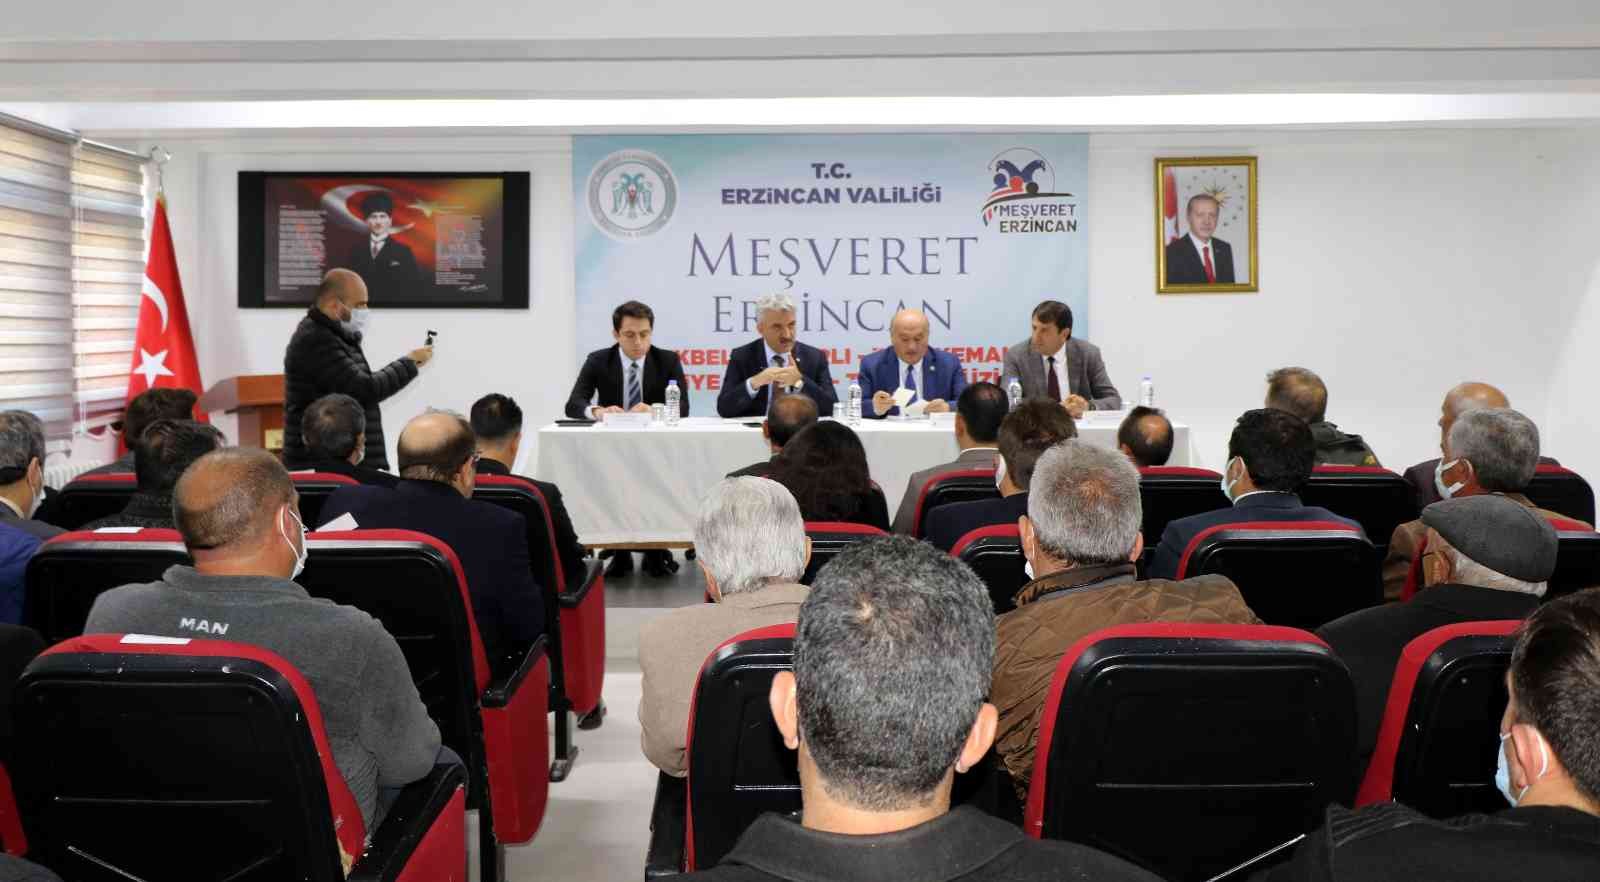 Meşveret Erzincan” toplantısının ilki Otlukbeli ilçesinde yapıldı #erzincan